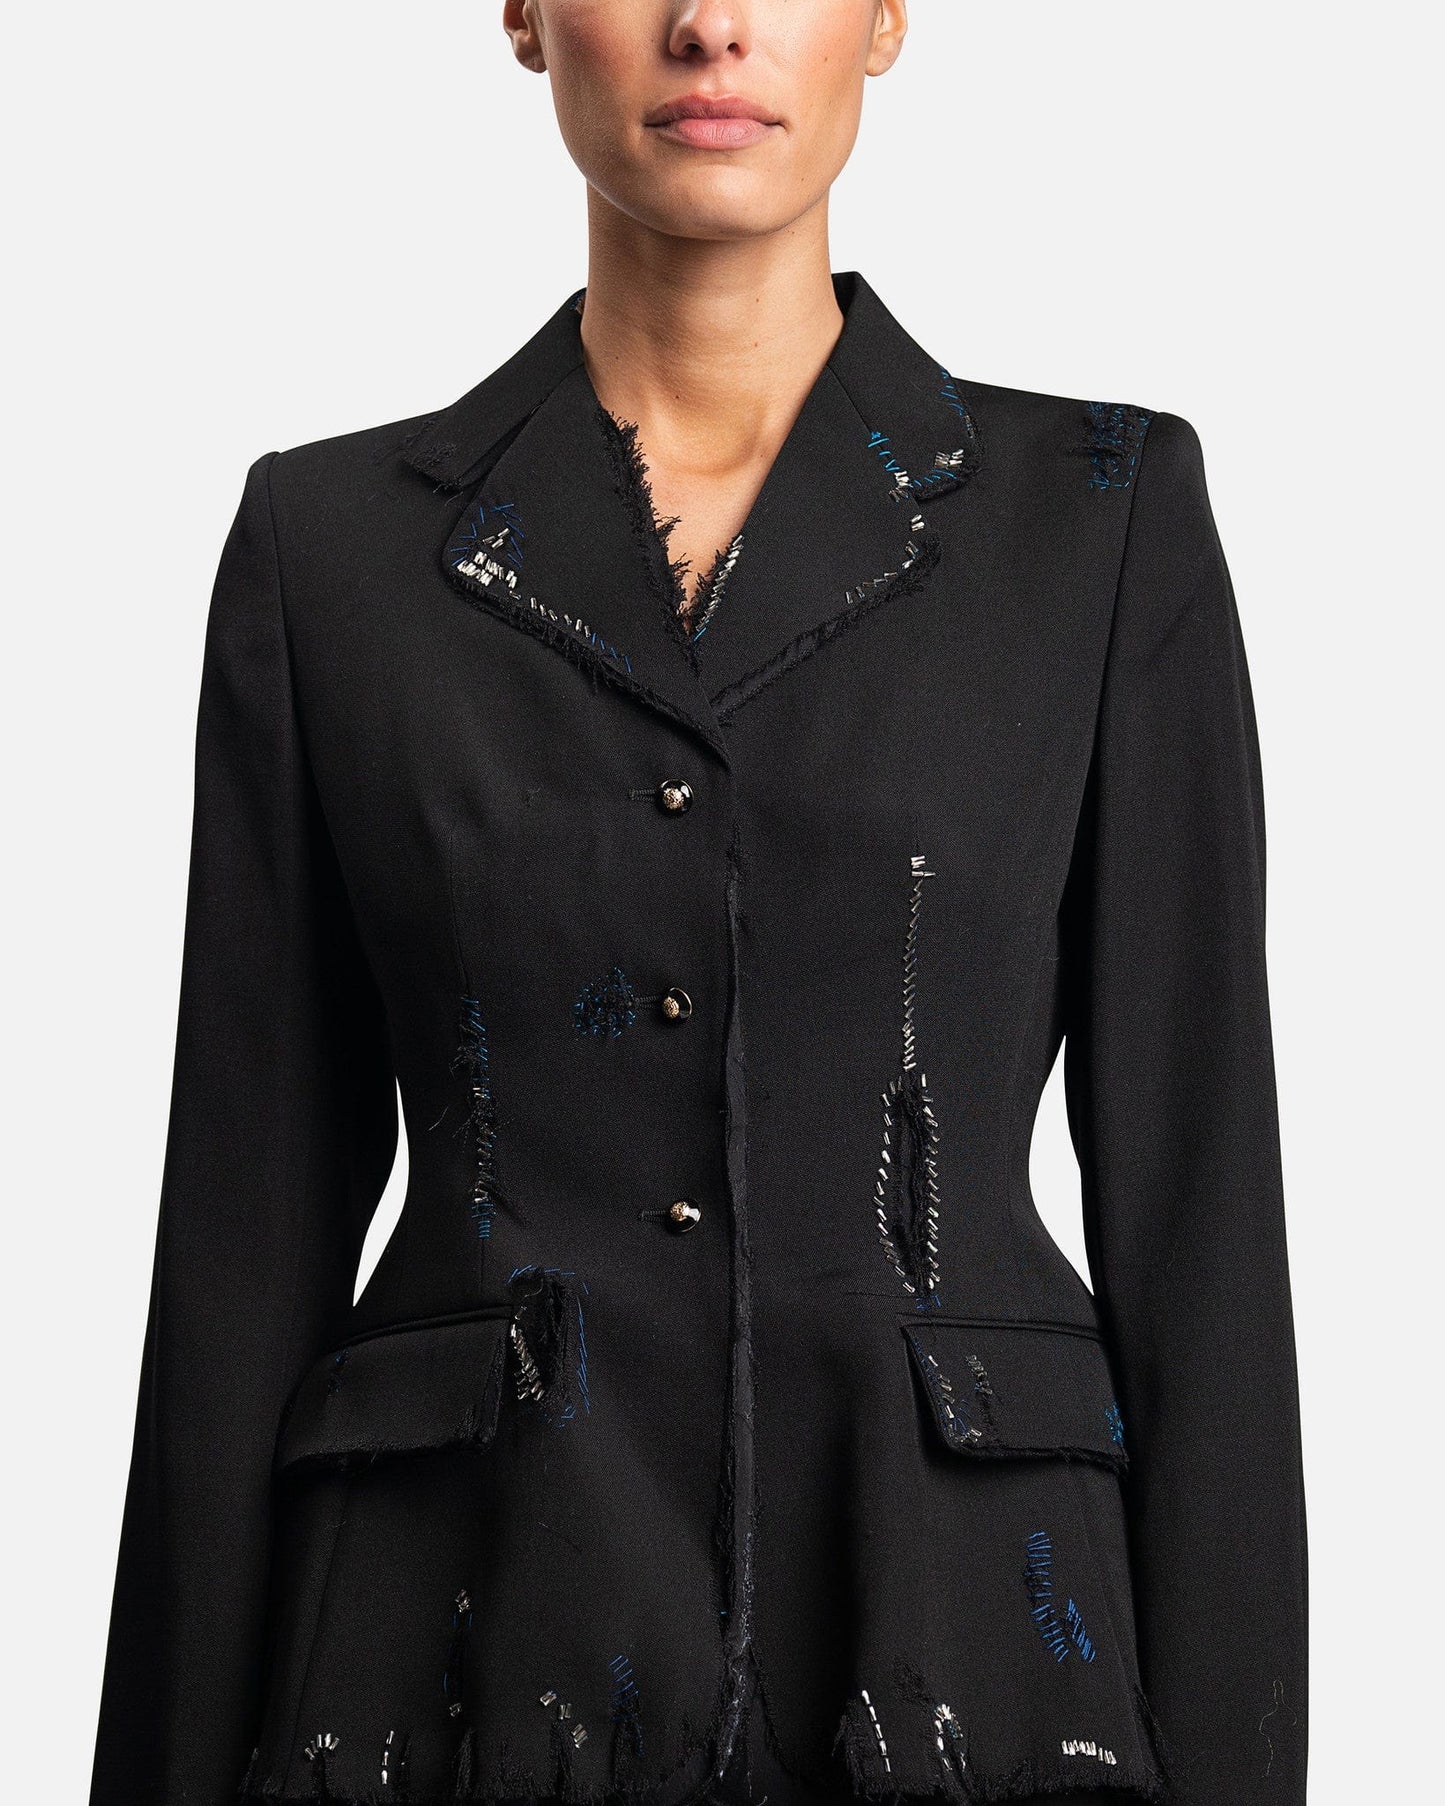 Marni Women Jackets Women's Frayed Wool Grain De Poudre in Black